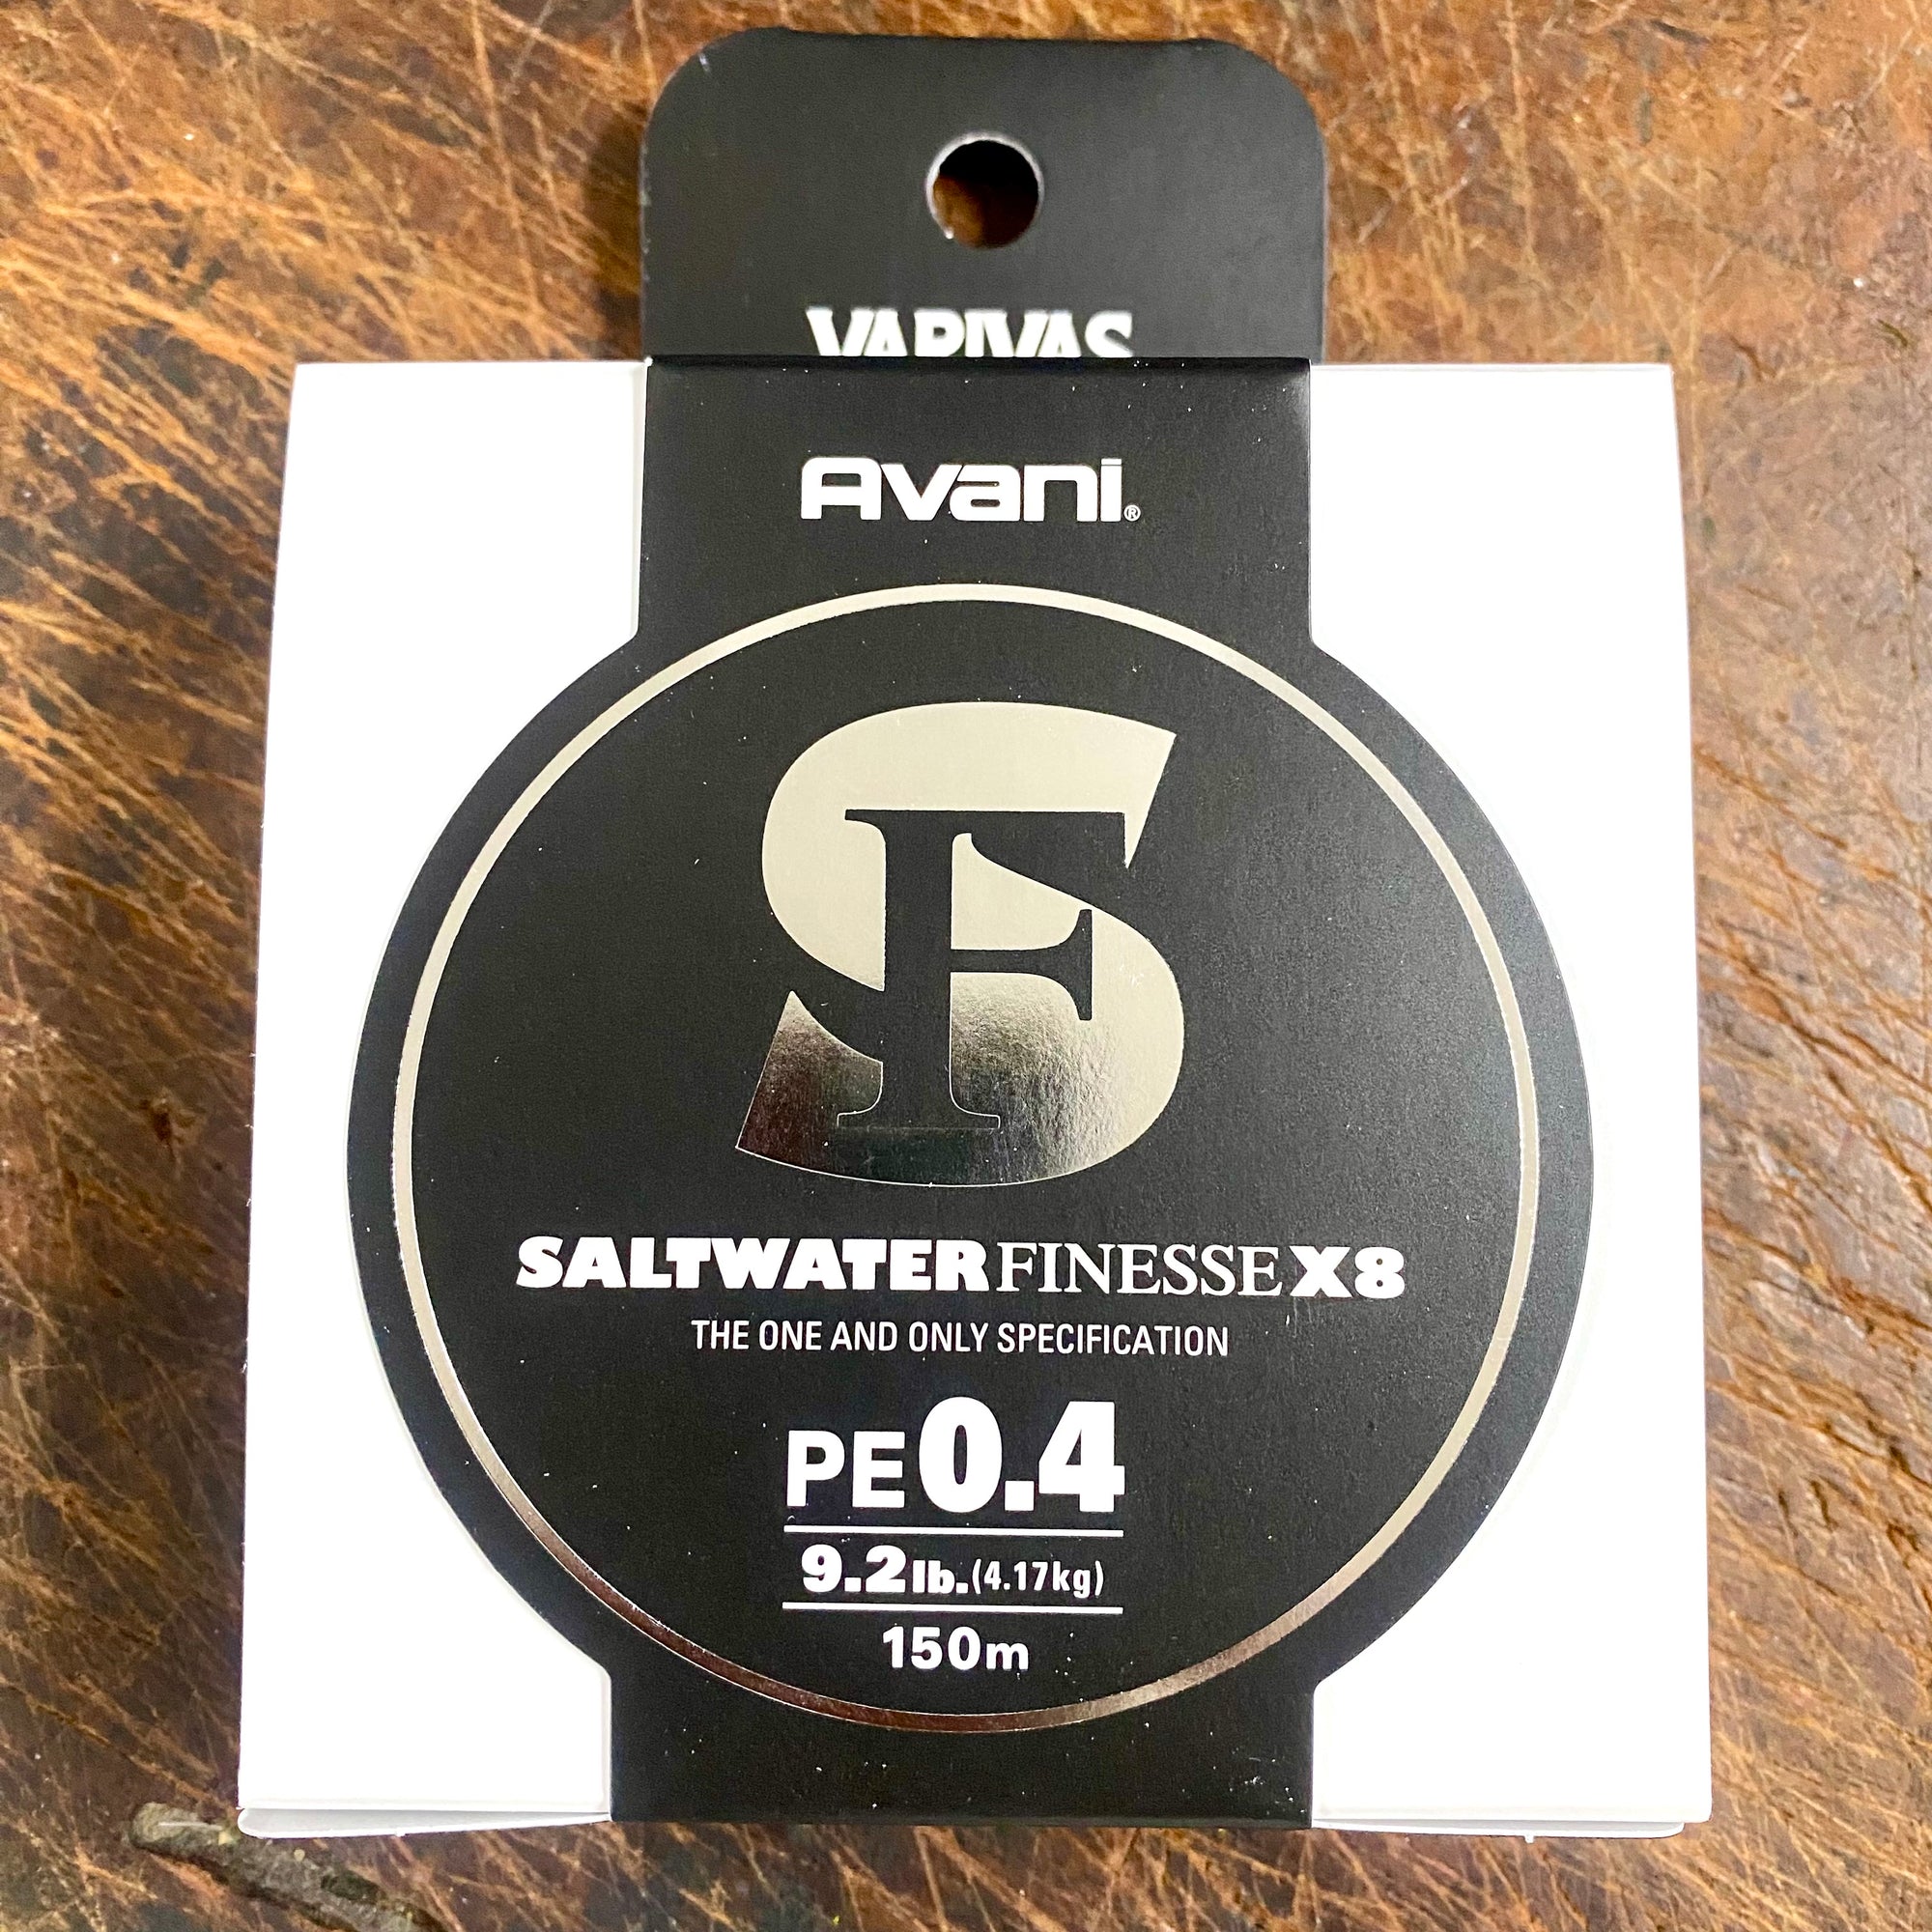 Varivas Avani Saltwater Finesse X8 Braid PE0.4 - 9.2lb - 150m